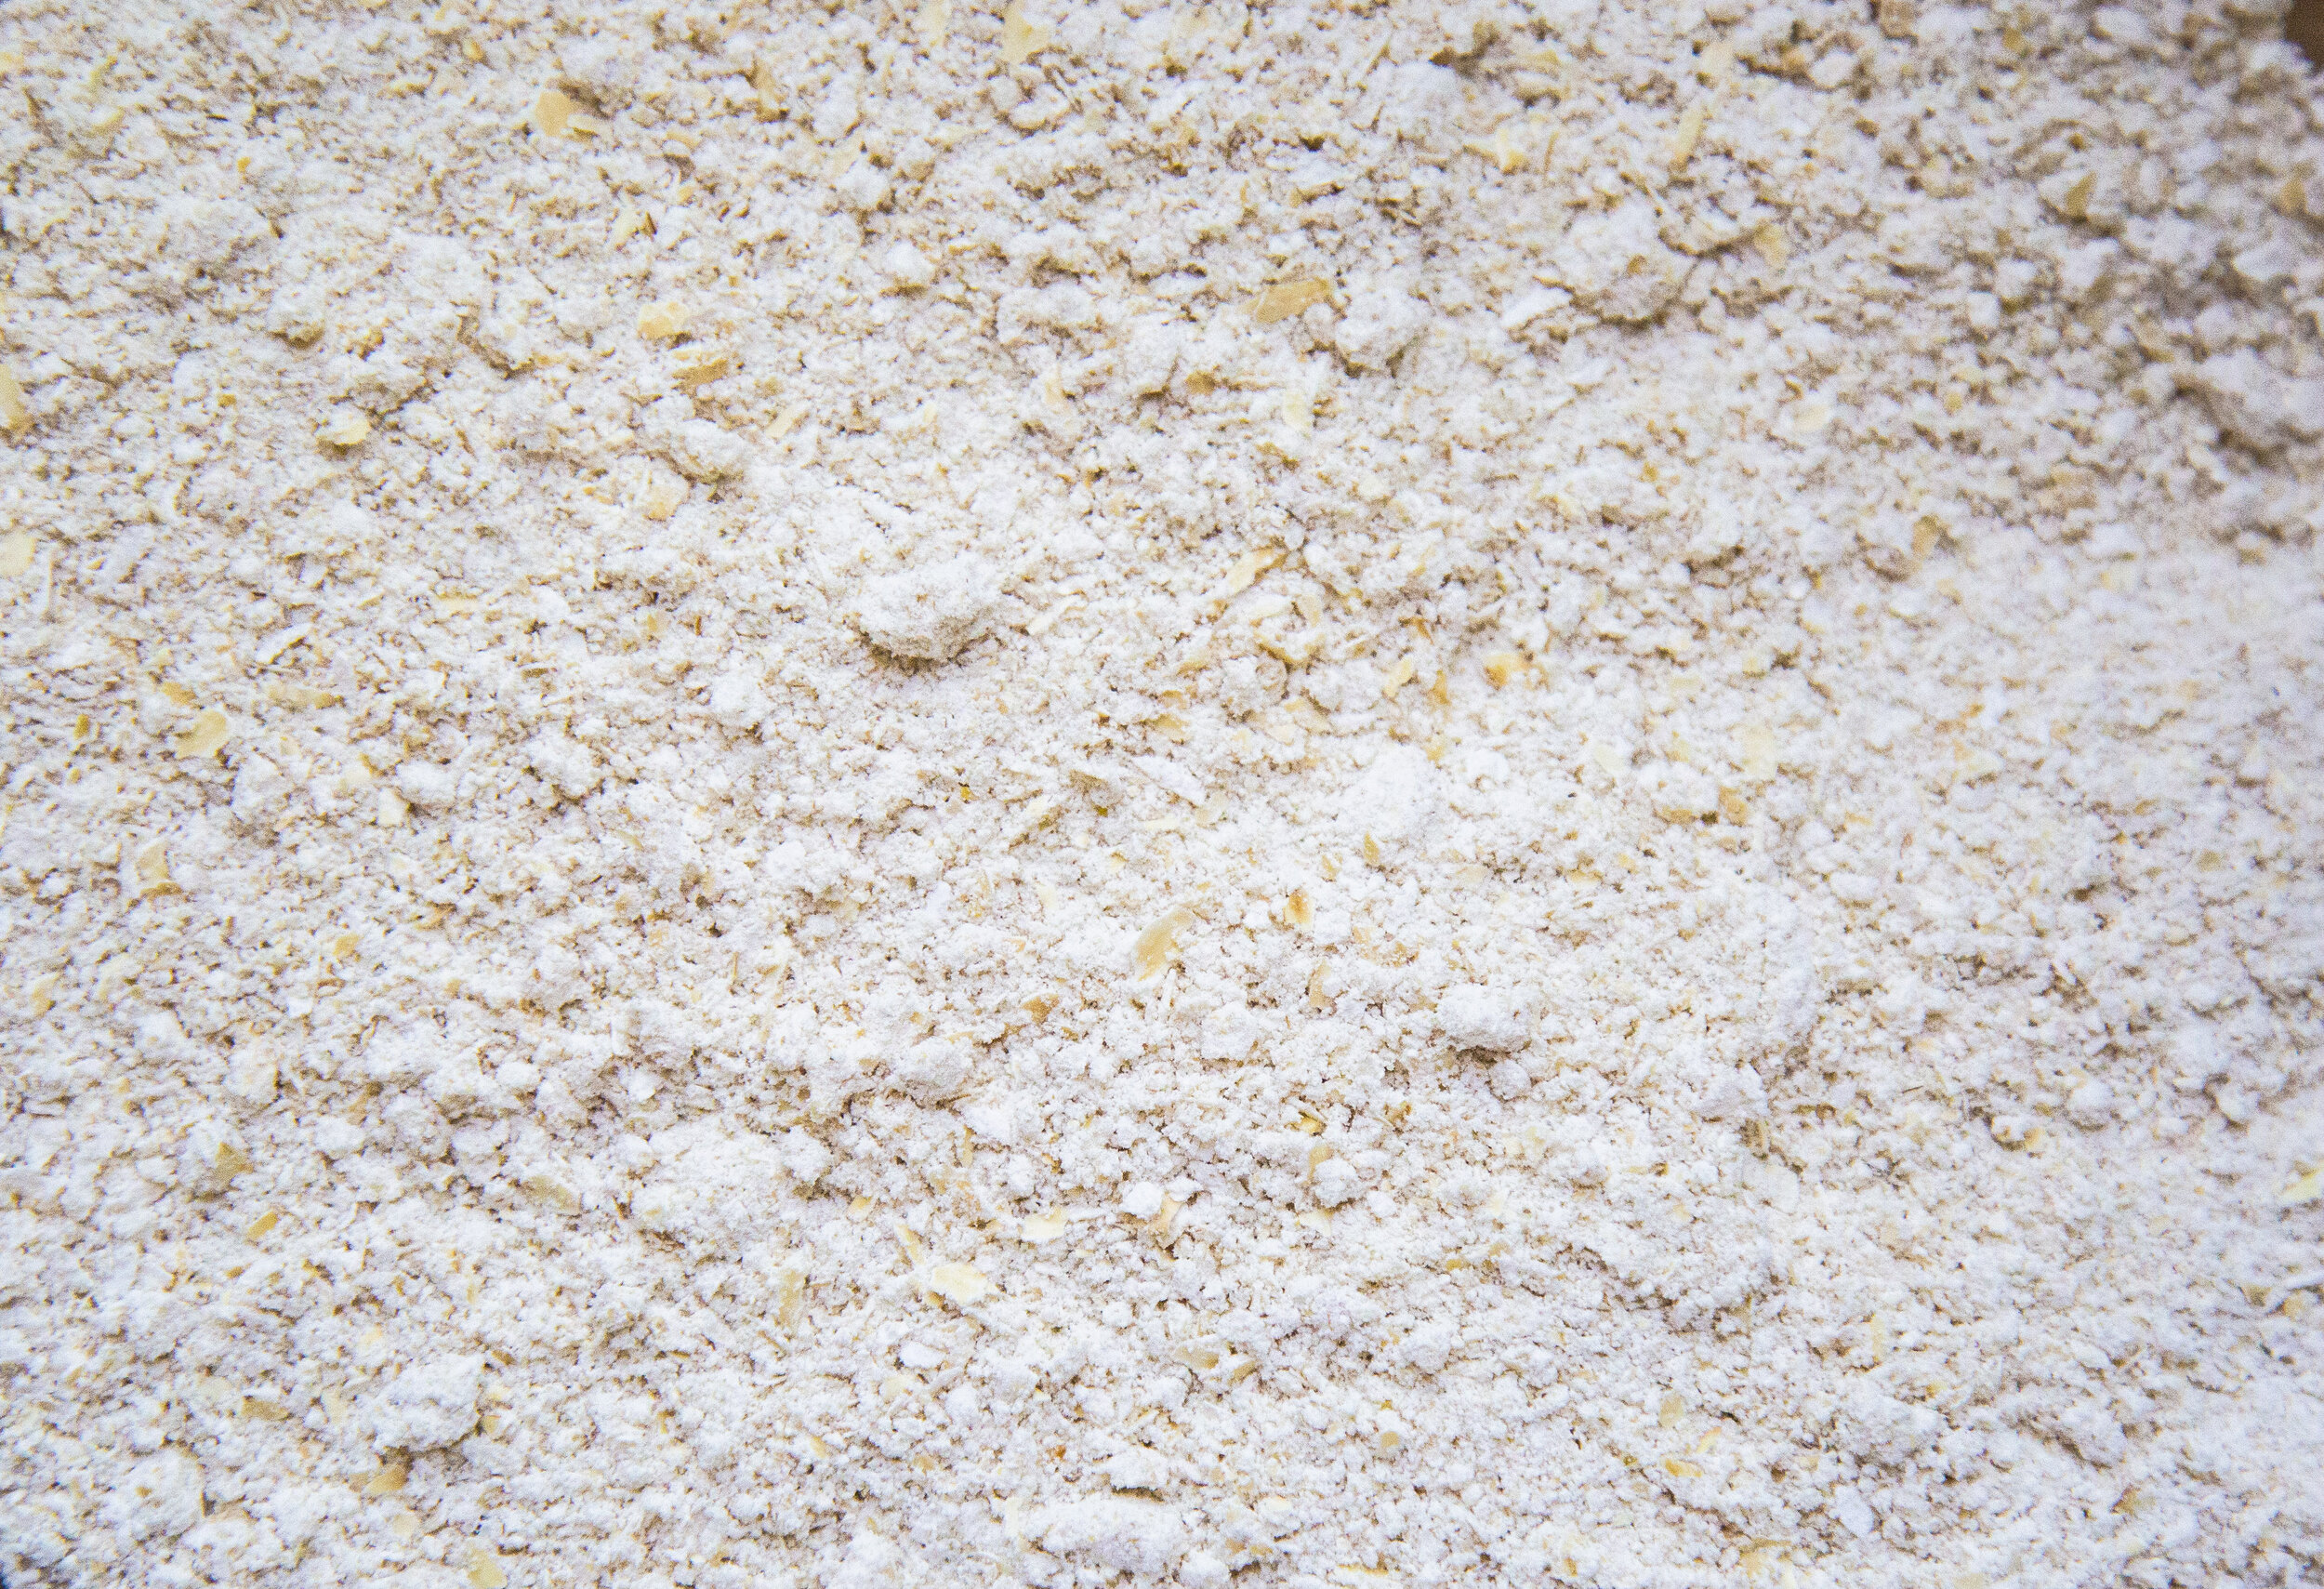 wholesale-oat-flour2.jpg